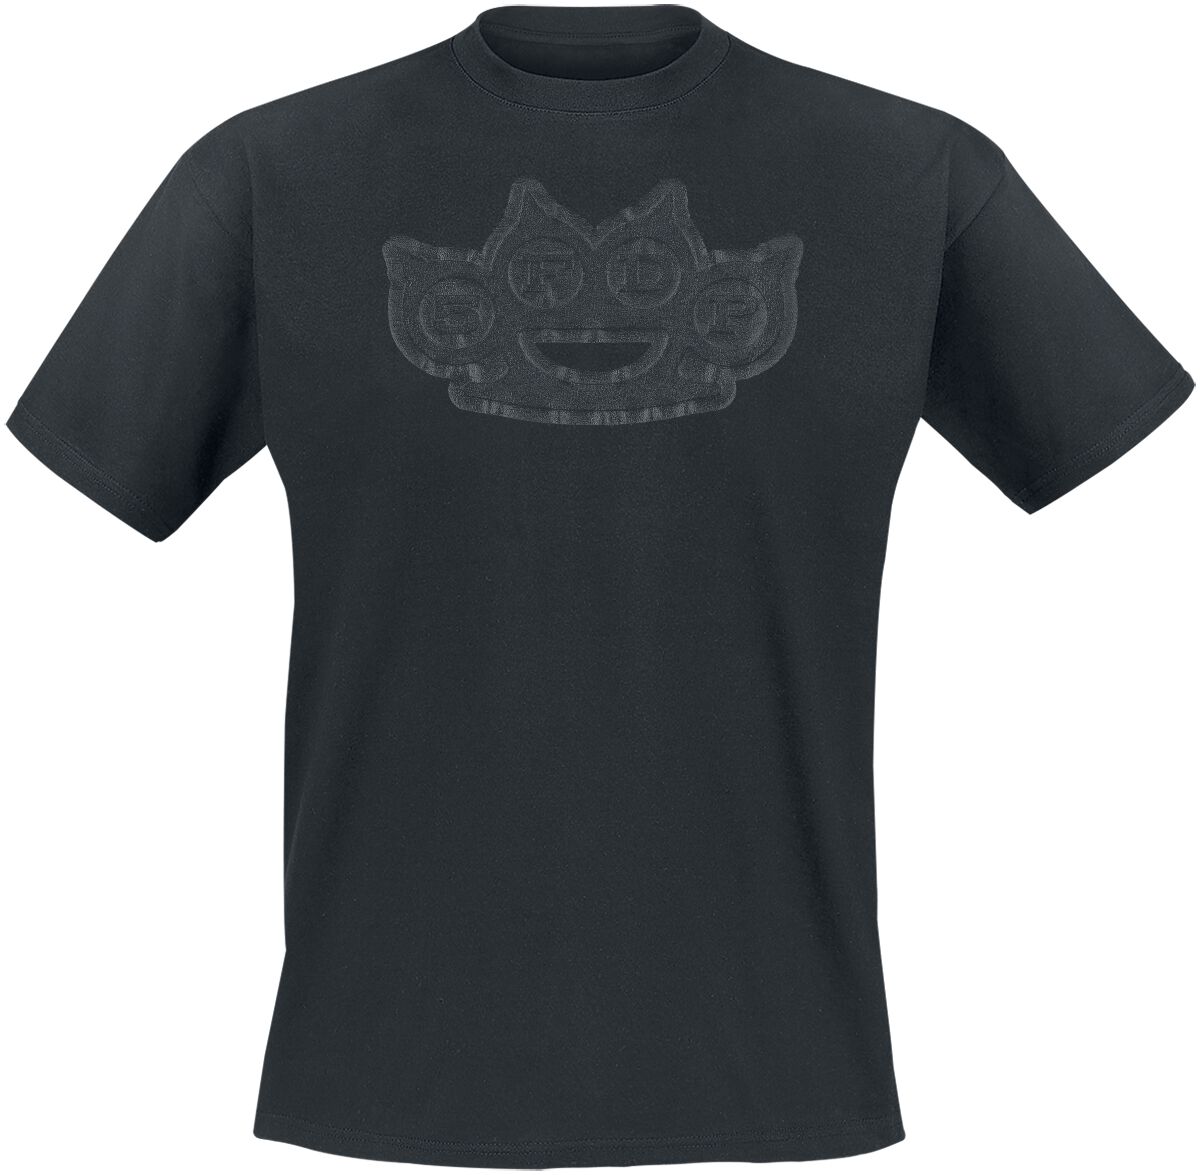 Five Finger Death Punch T-Shirt - Black On Black Knuckles - S bis 4XL - für Männer - Größe XL - schwarz  - Lizenziertes Merchandise!